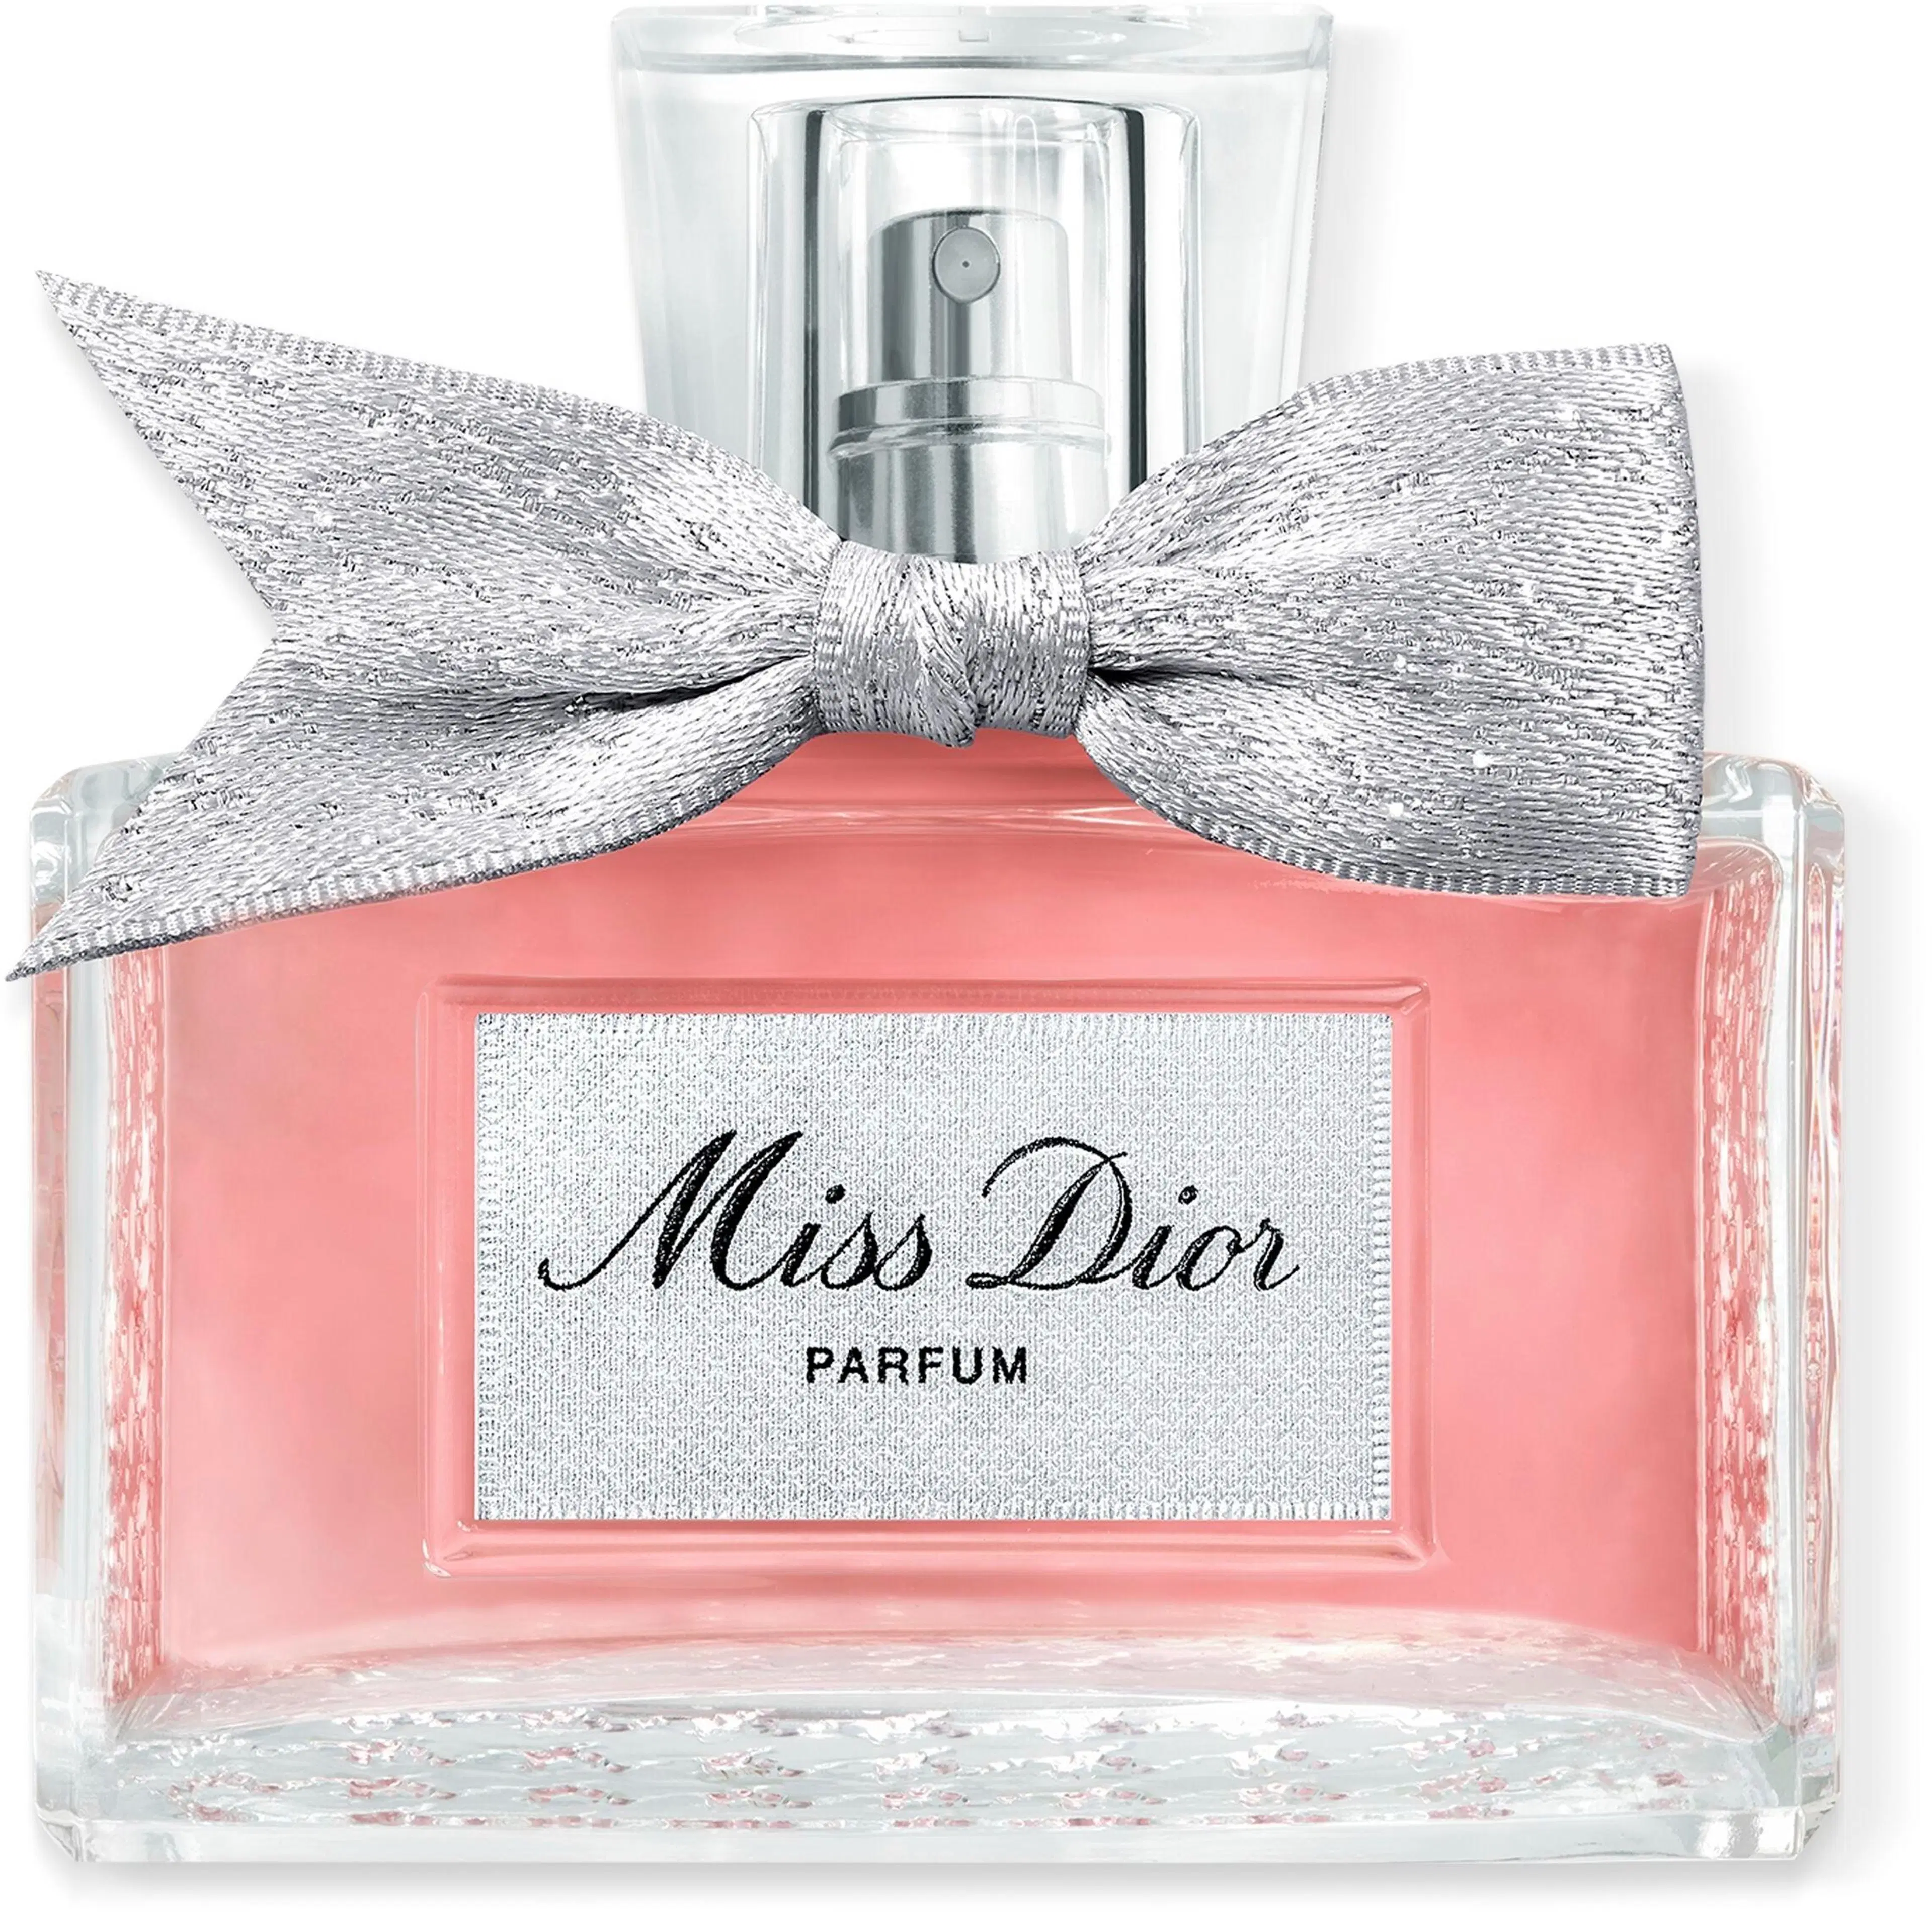 DIOR Miss Dior Parfum tuoksu 35 ml